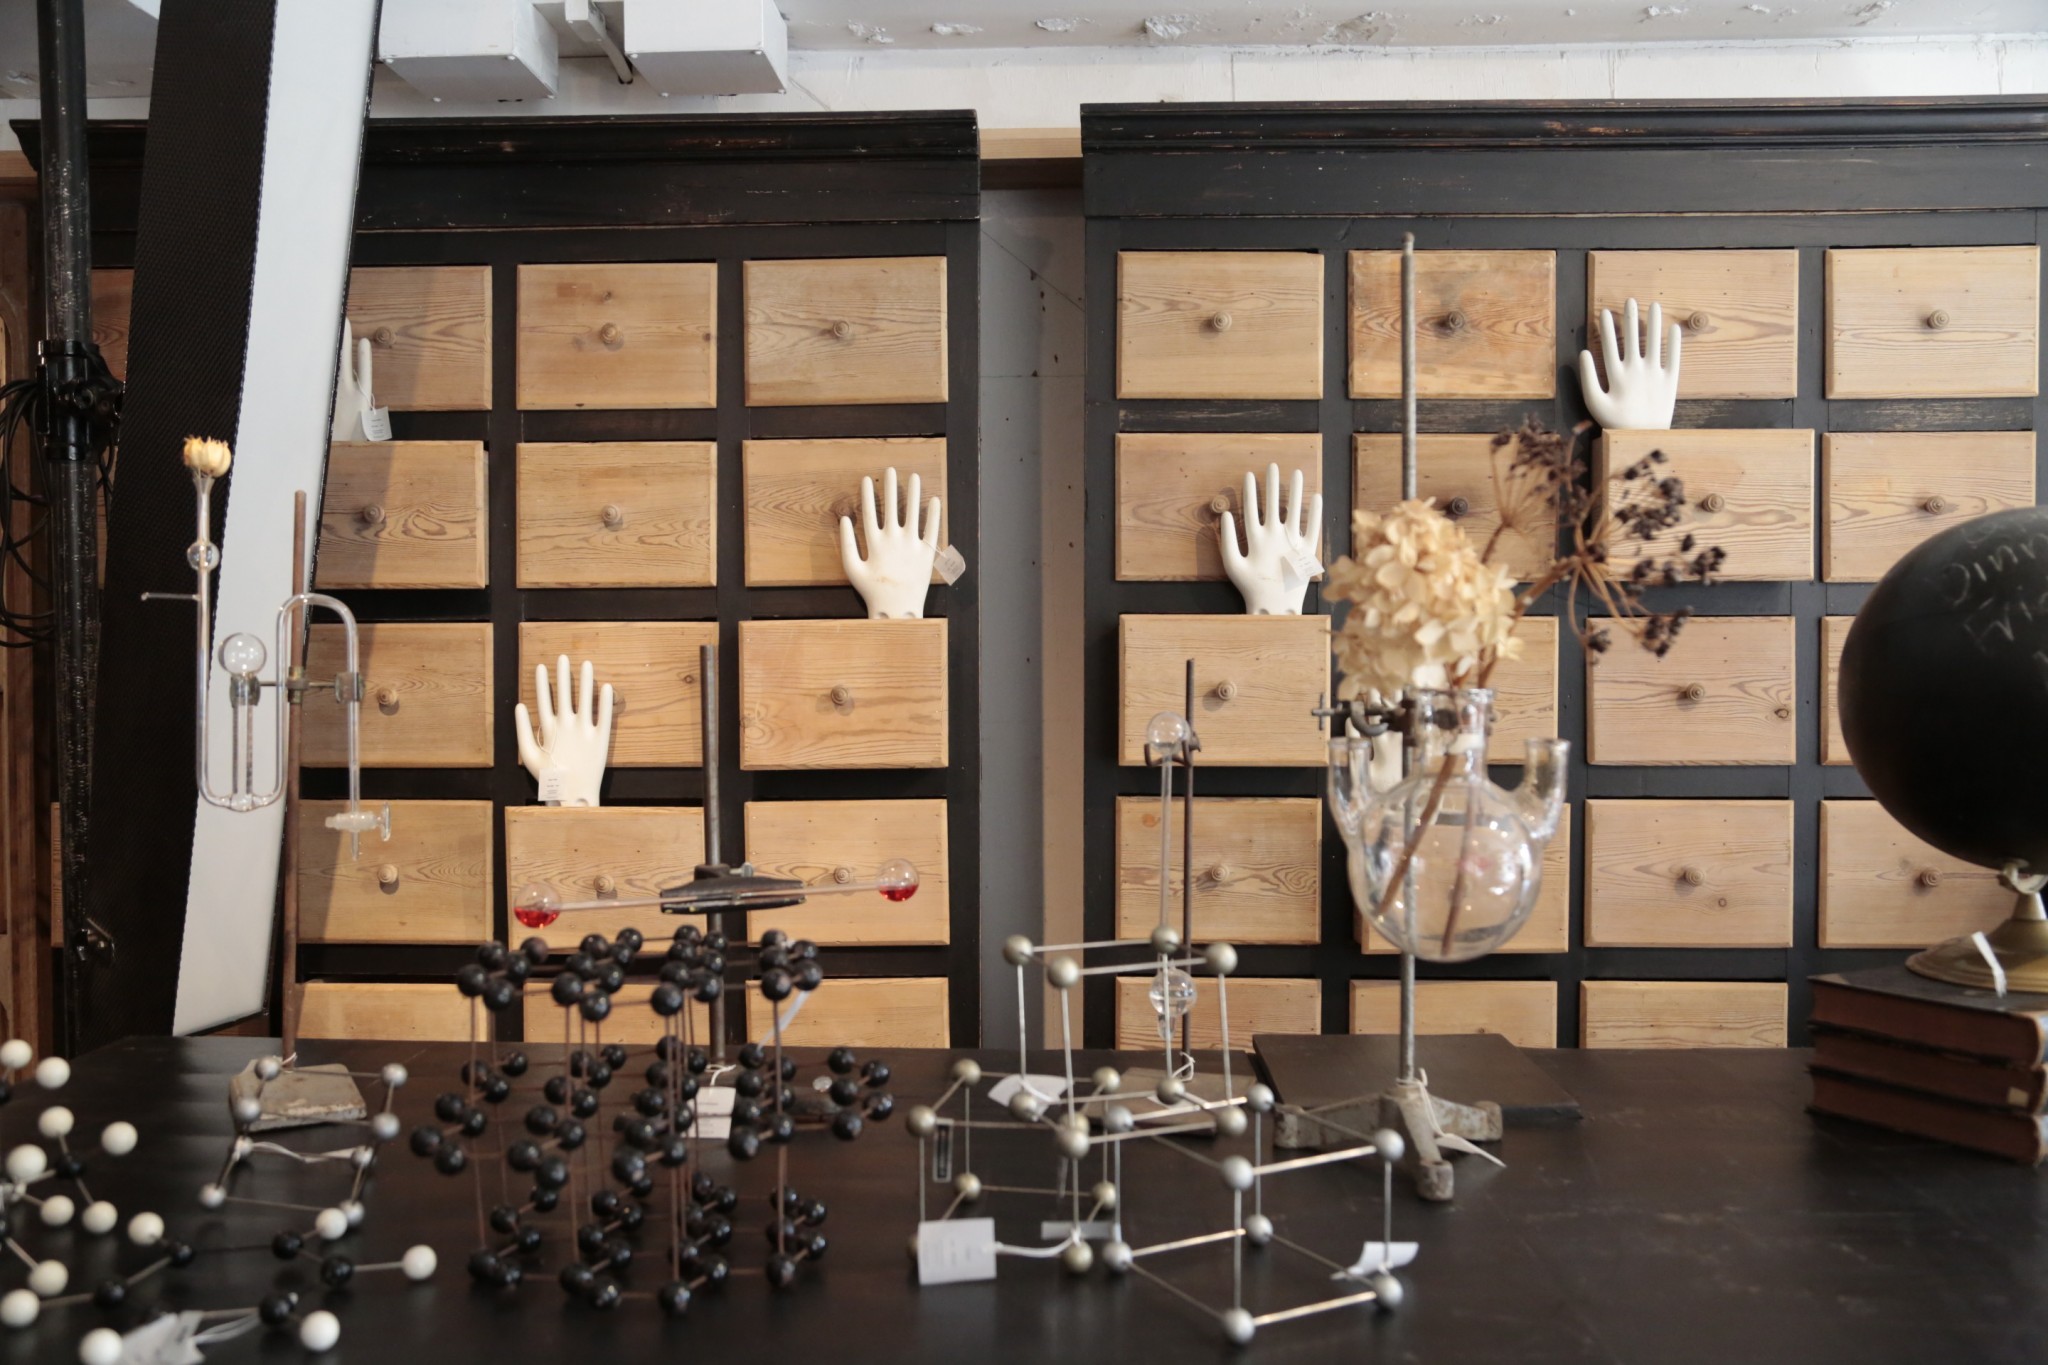 理科の実験室で使われていたような模型やフラスコ、ビーカーなどが並ぶ。実験用ビーカーは花瓶として活用するなど、生活への取り入れ方を提案。